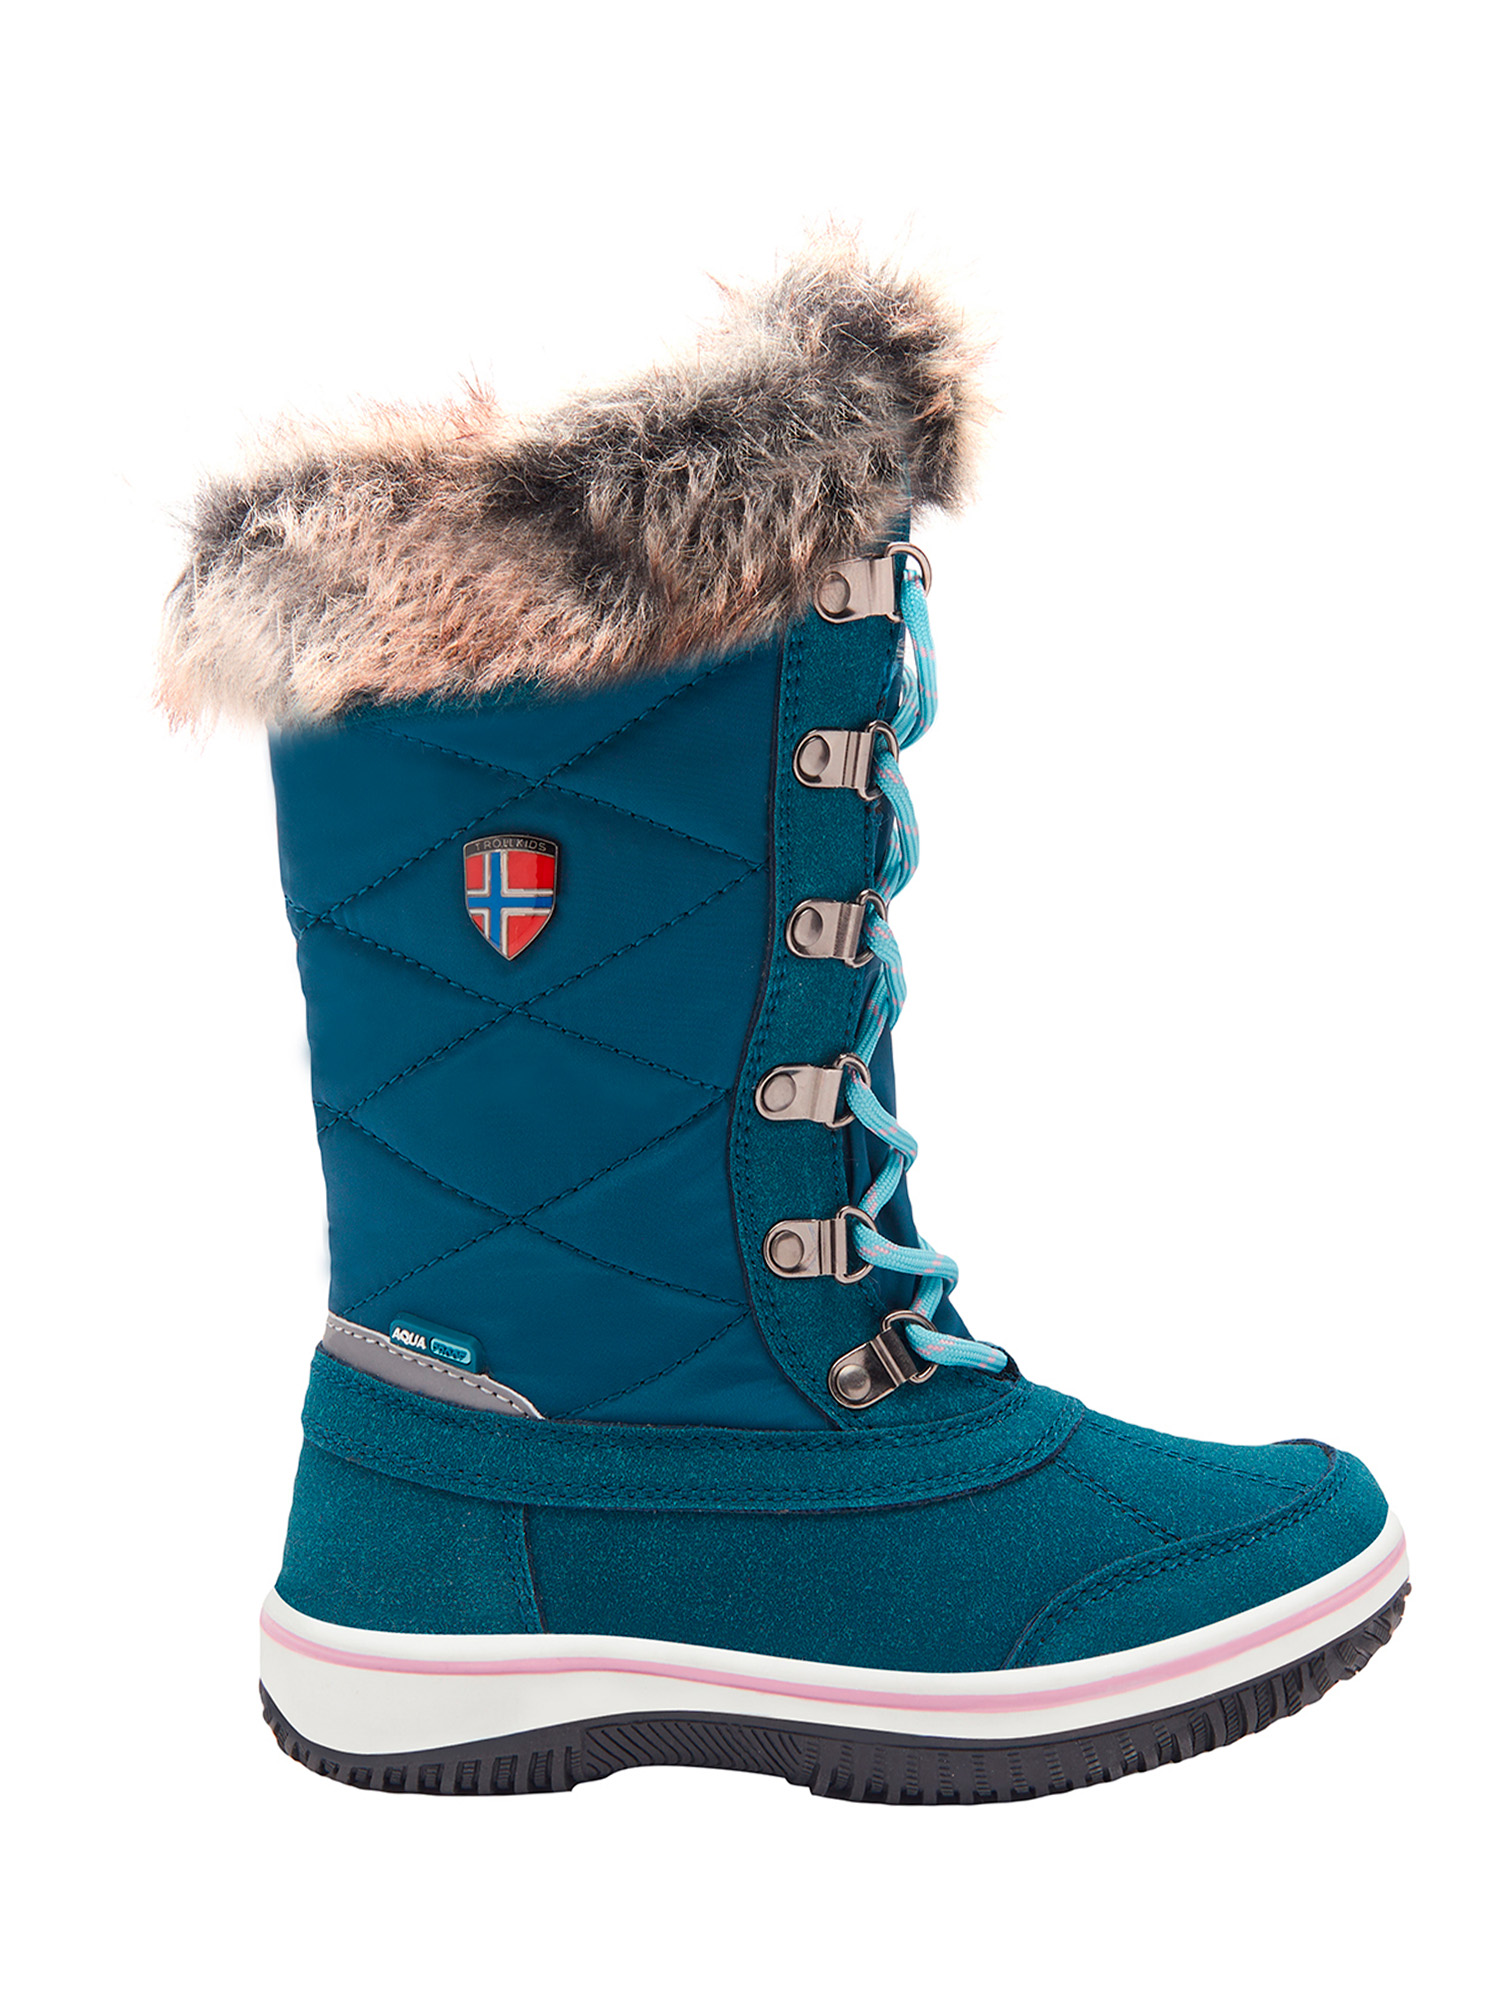 Ботинки Trollkids Girls Holmenkollen Snow Boots, голубой, 32